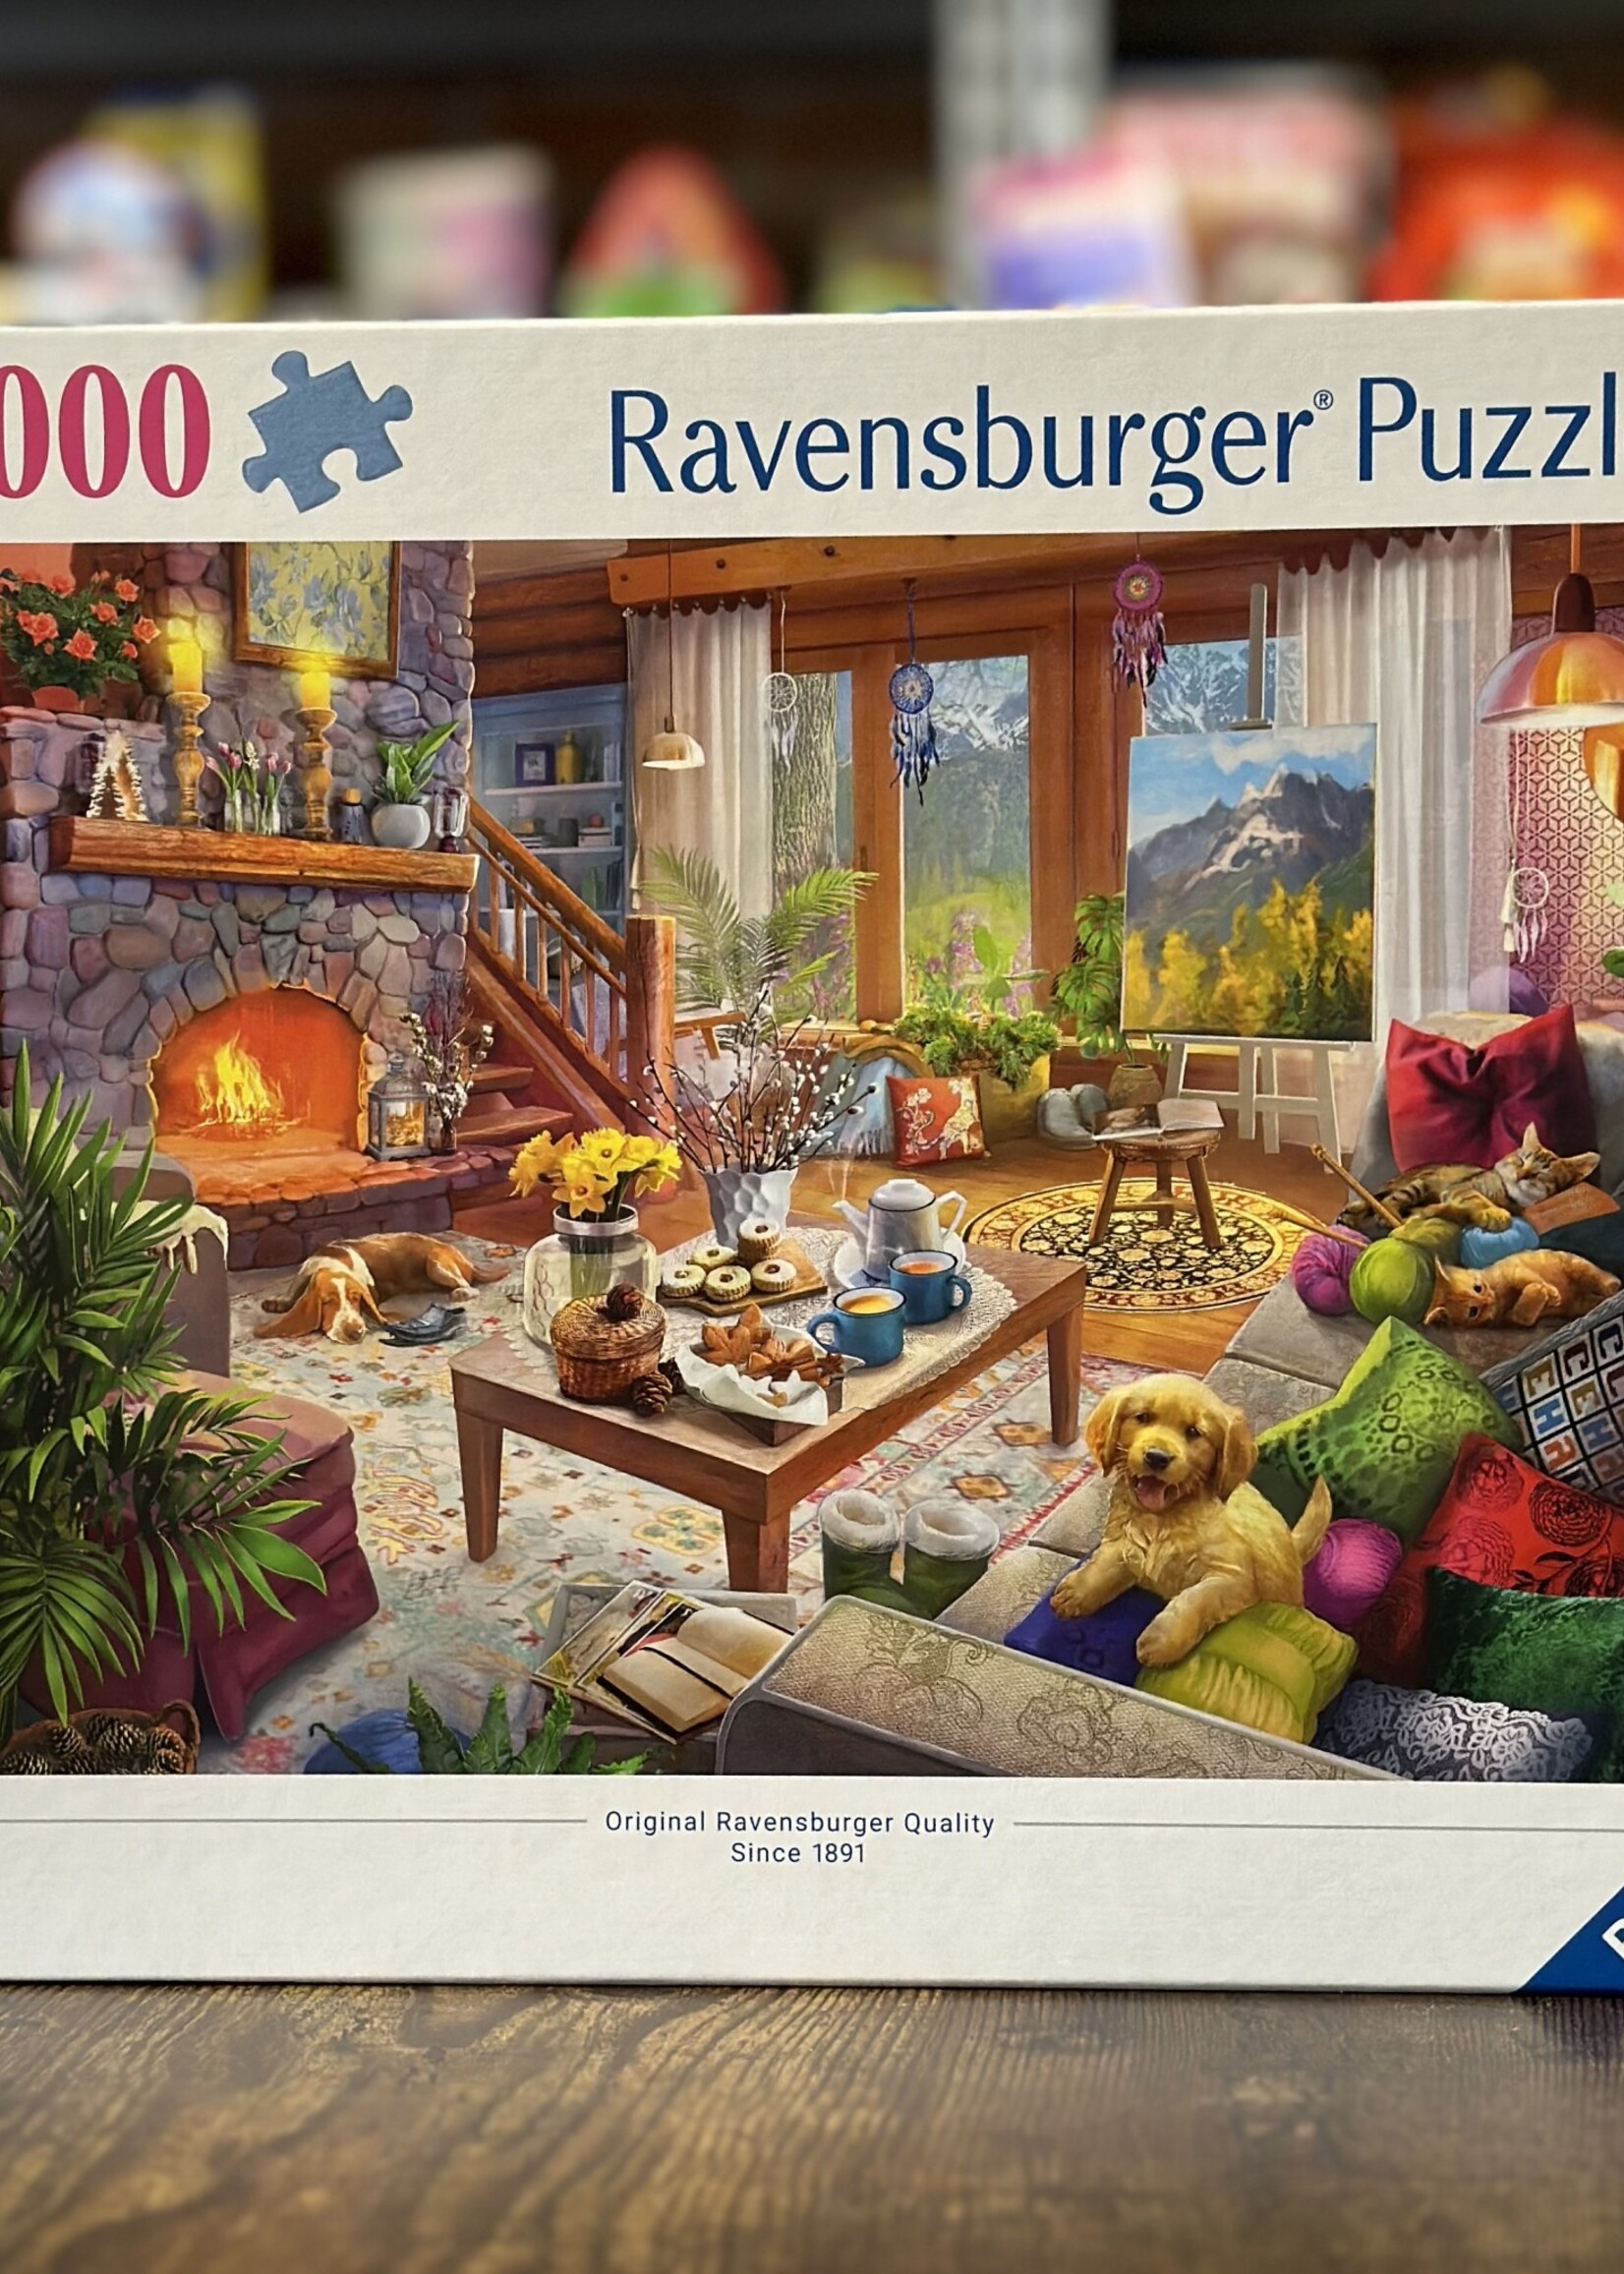 Ravensburger Puzzle - Cozy Cabin 1000 Pc.